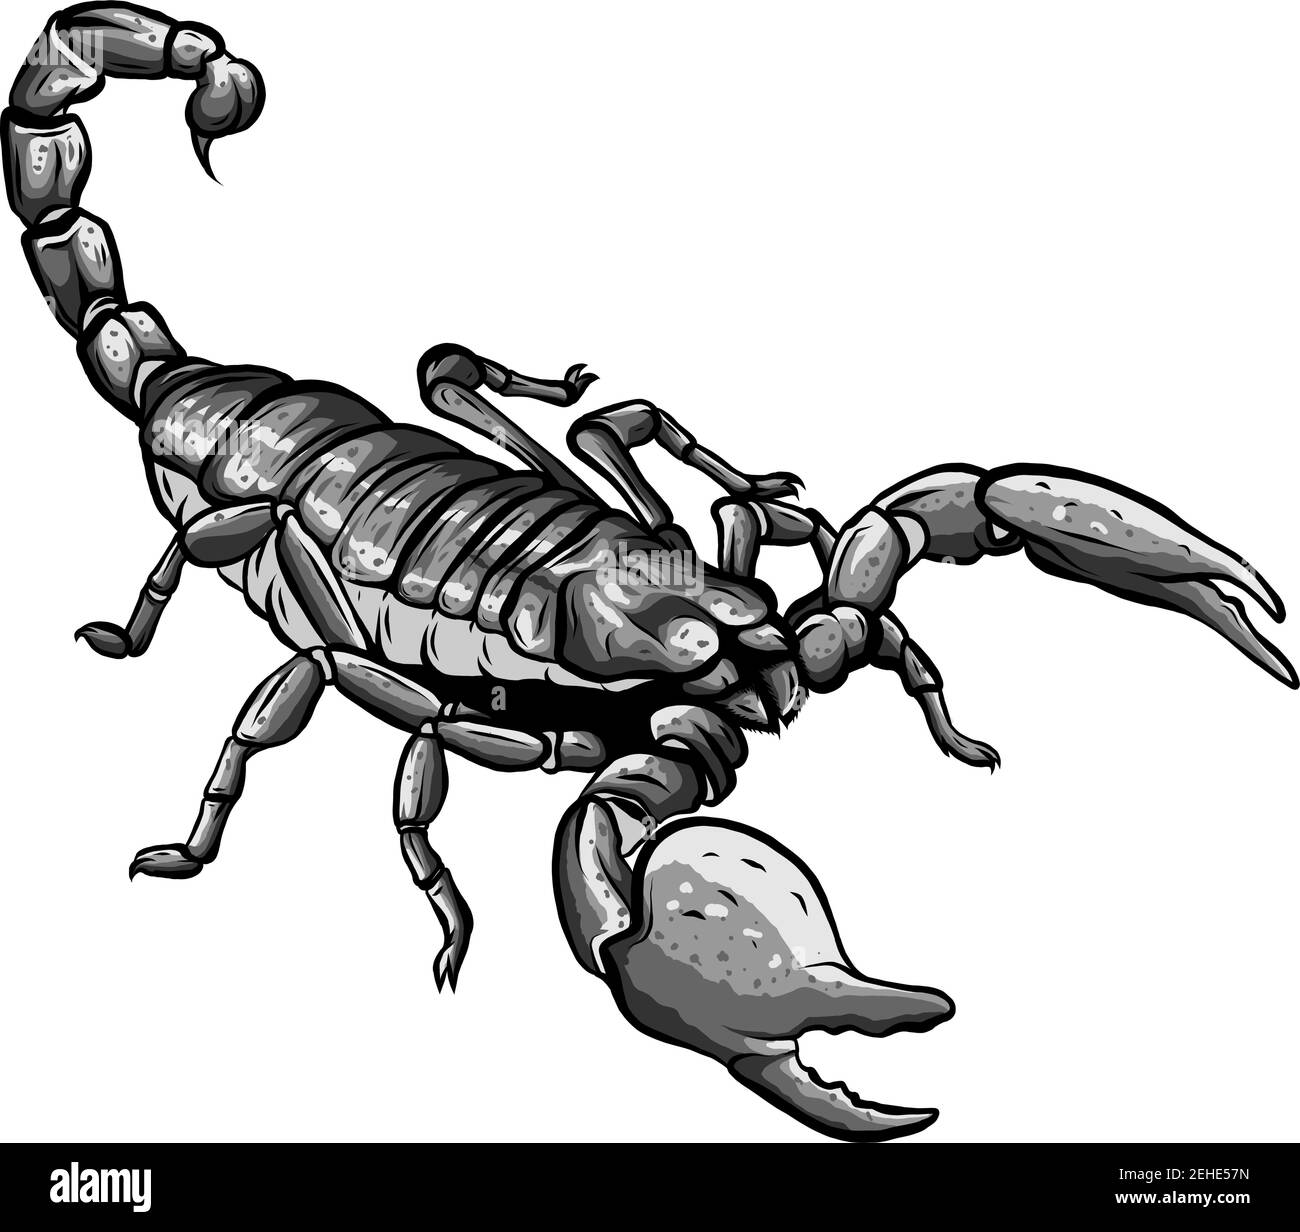 Illustration des Skorpion-Arachnid-Insekts. Ideal für Etymologie und Unterrichtsmaterialien Stock Vektor